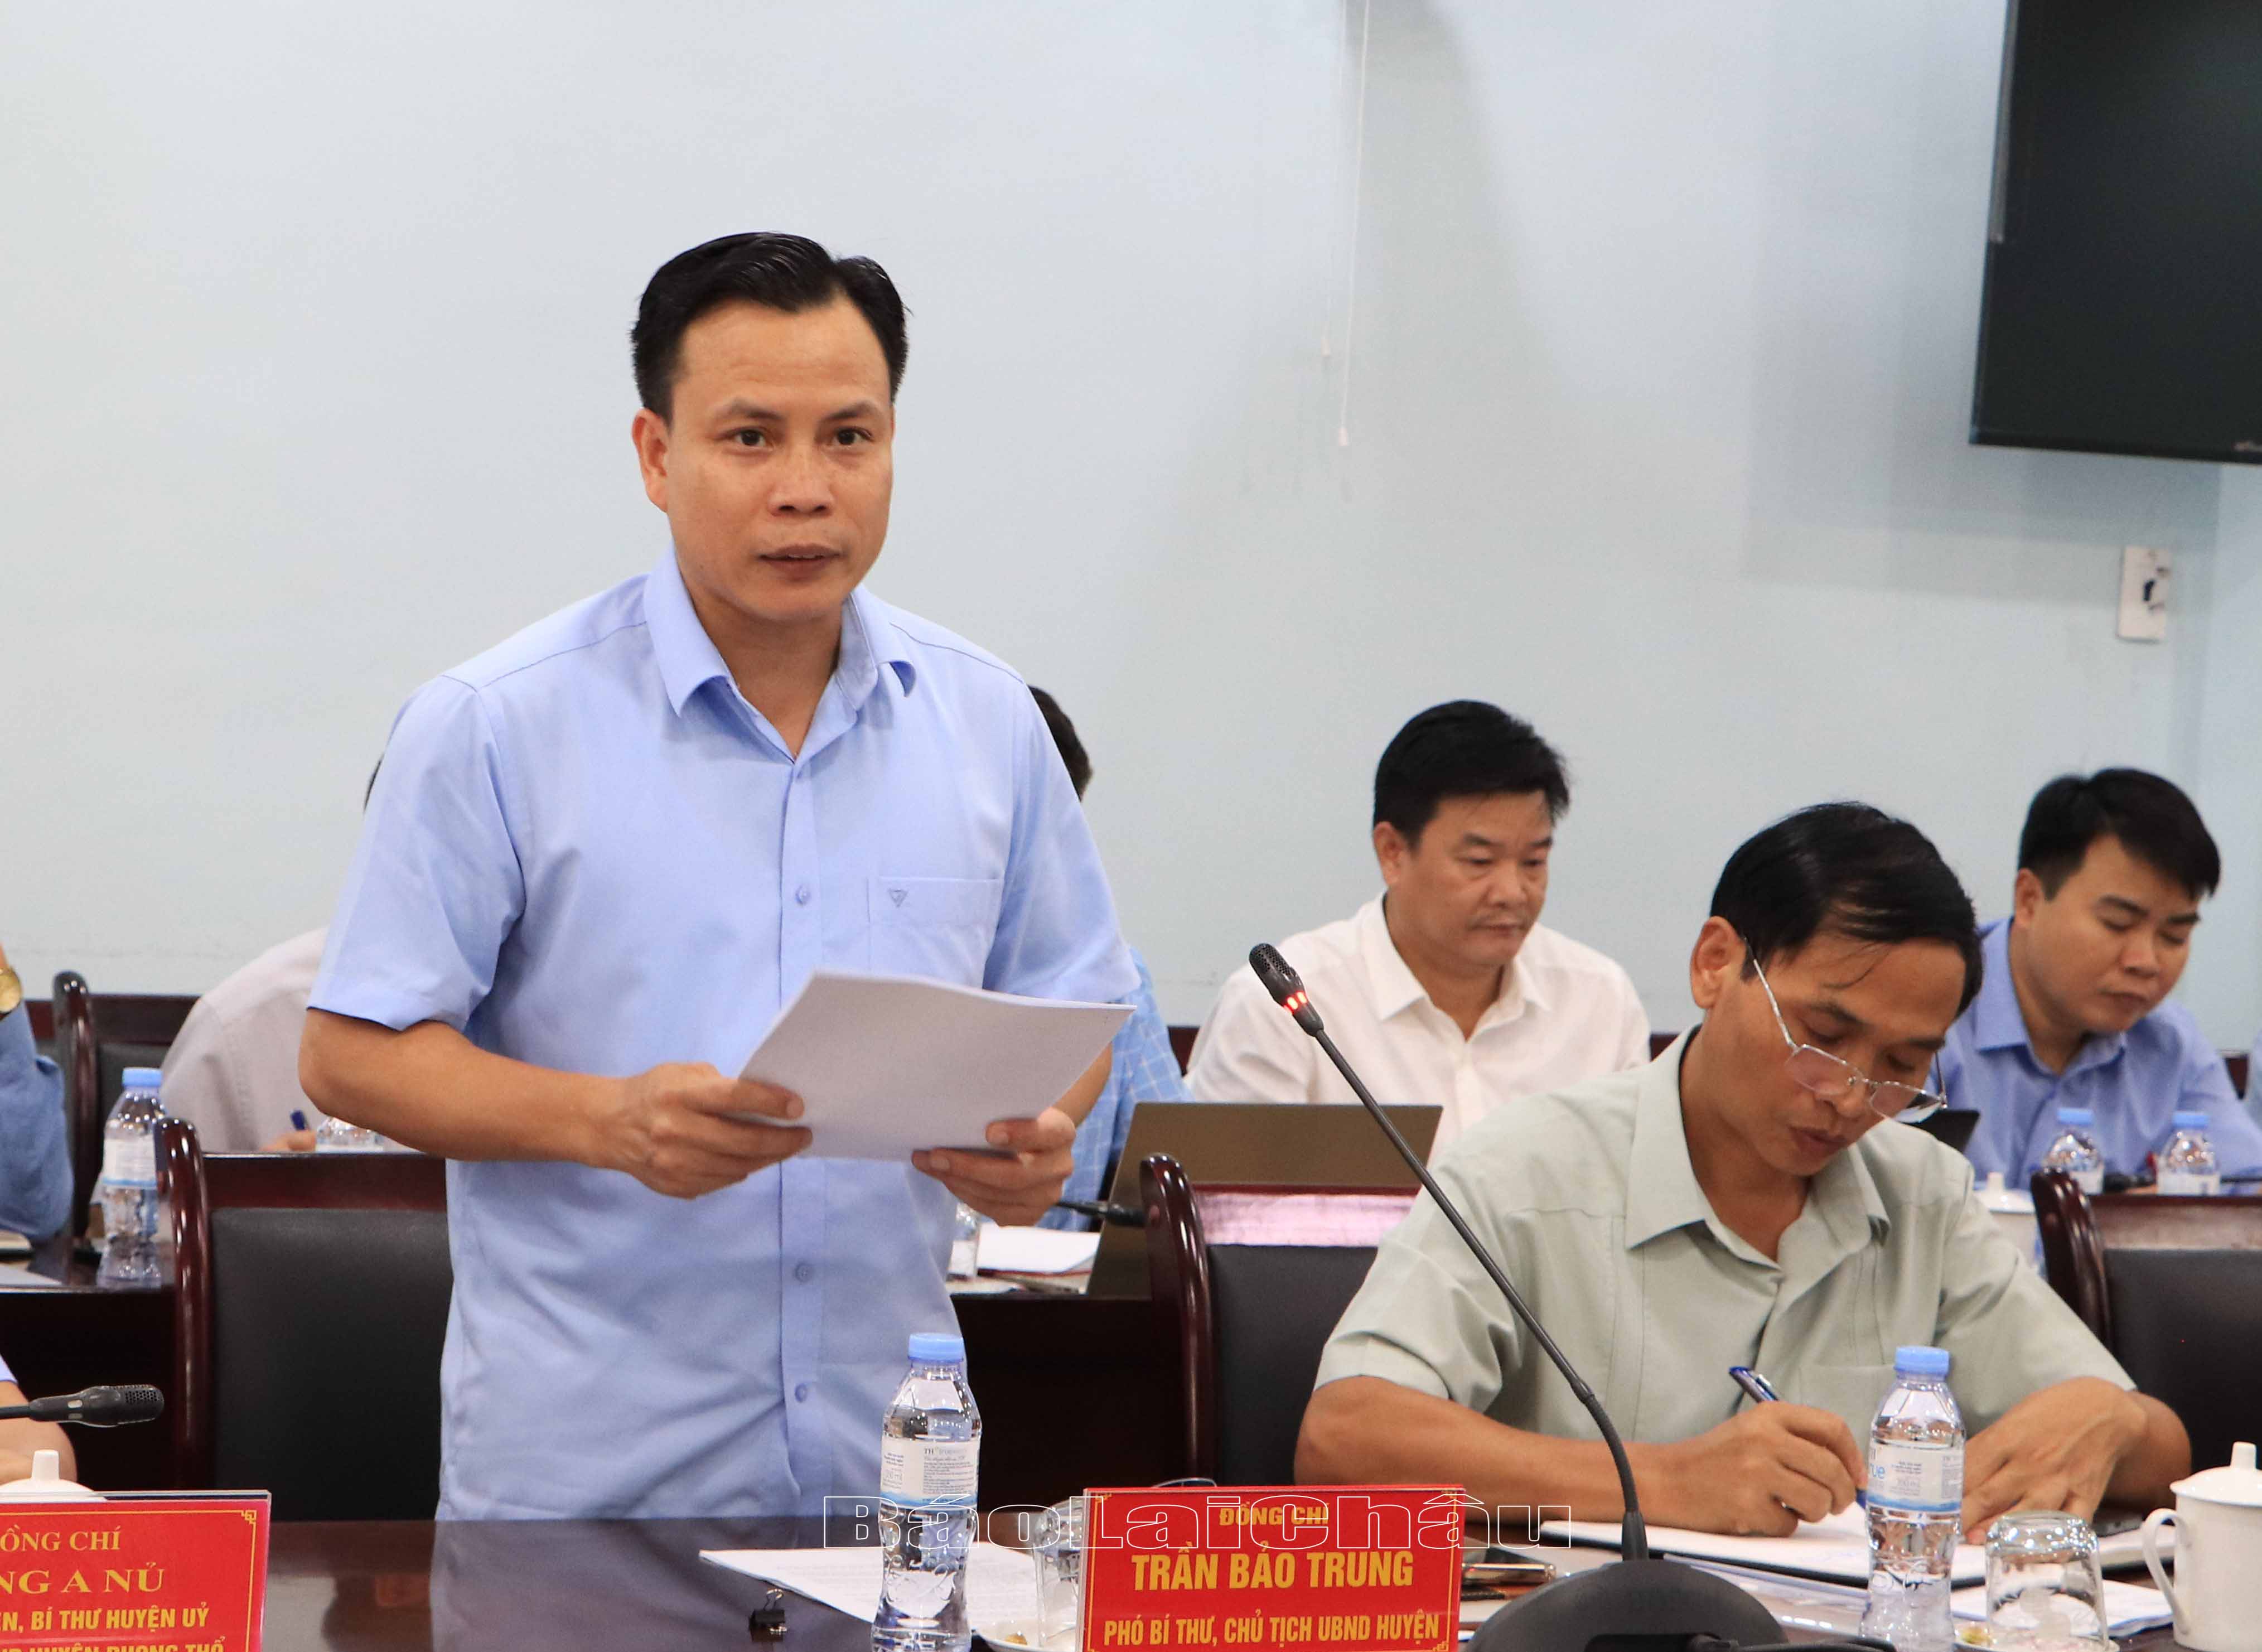 Đồng chí Trần Bảo Trung – Phó Bí thư Huyện ủy, Chủ tịch UBND huyện Phong Thổ báo cáo tình hình thực hiện nhiệm vụ phát triển kinh tế - xã hội trên địa bàn huyện.